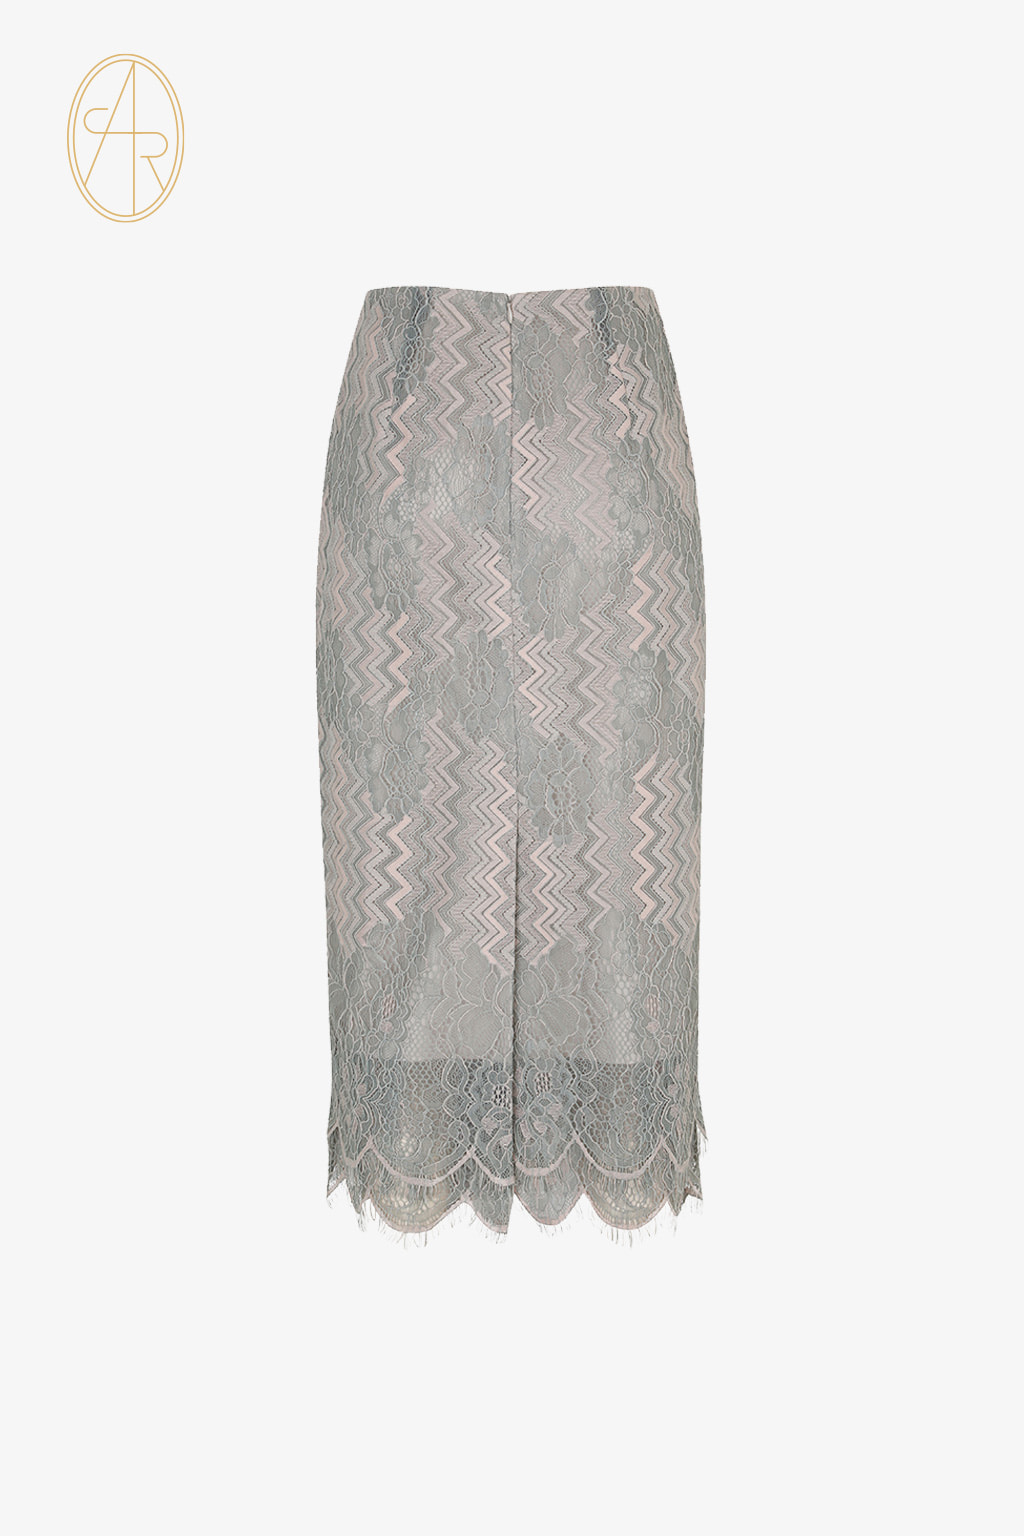 [SALE] lauren lace skirt